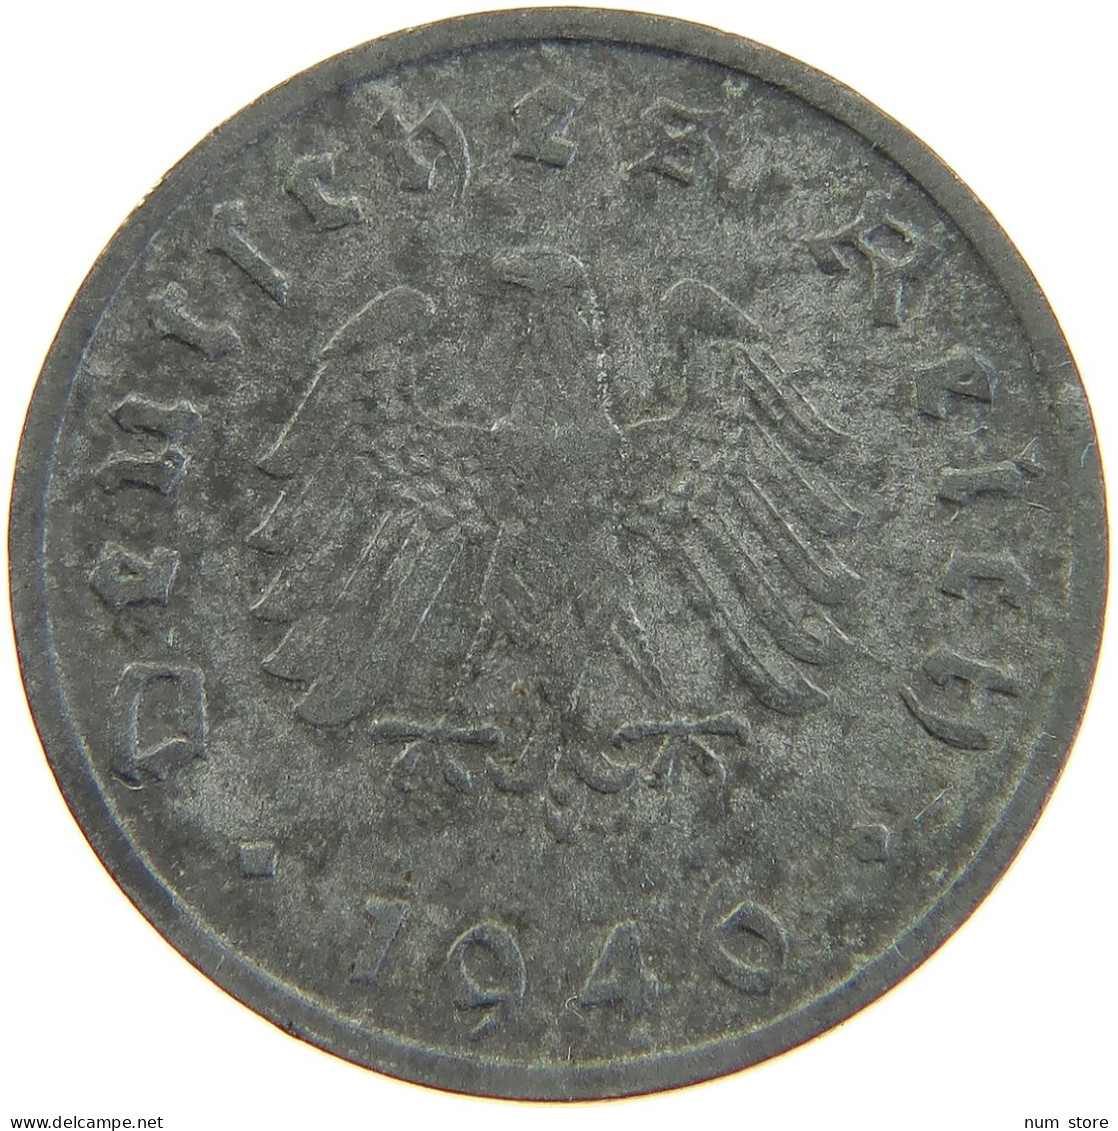 ALLIIERTE BESETZUNG 10 REICHSPFENNIG 1946 F  #MA 102752 - 10 Reichspfennig